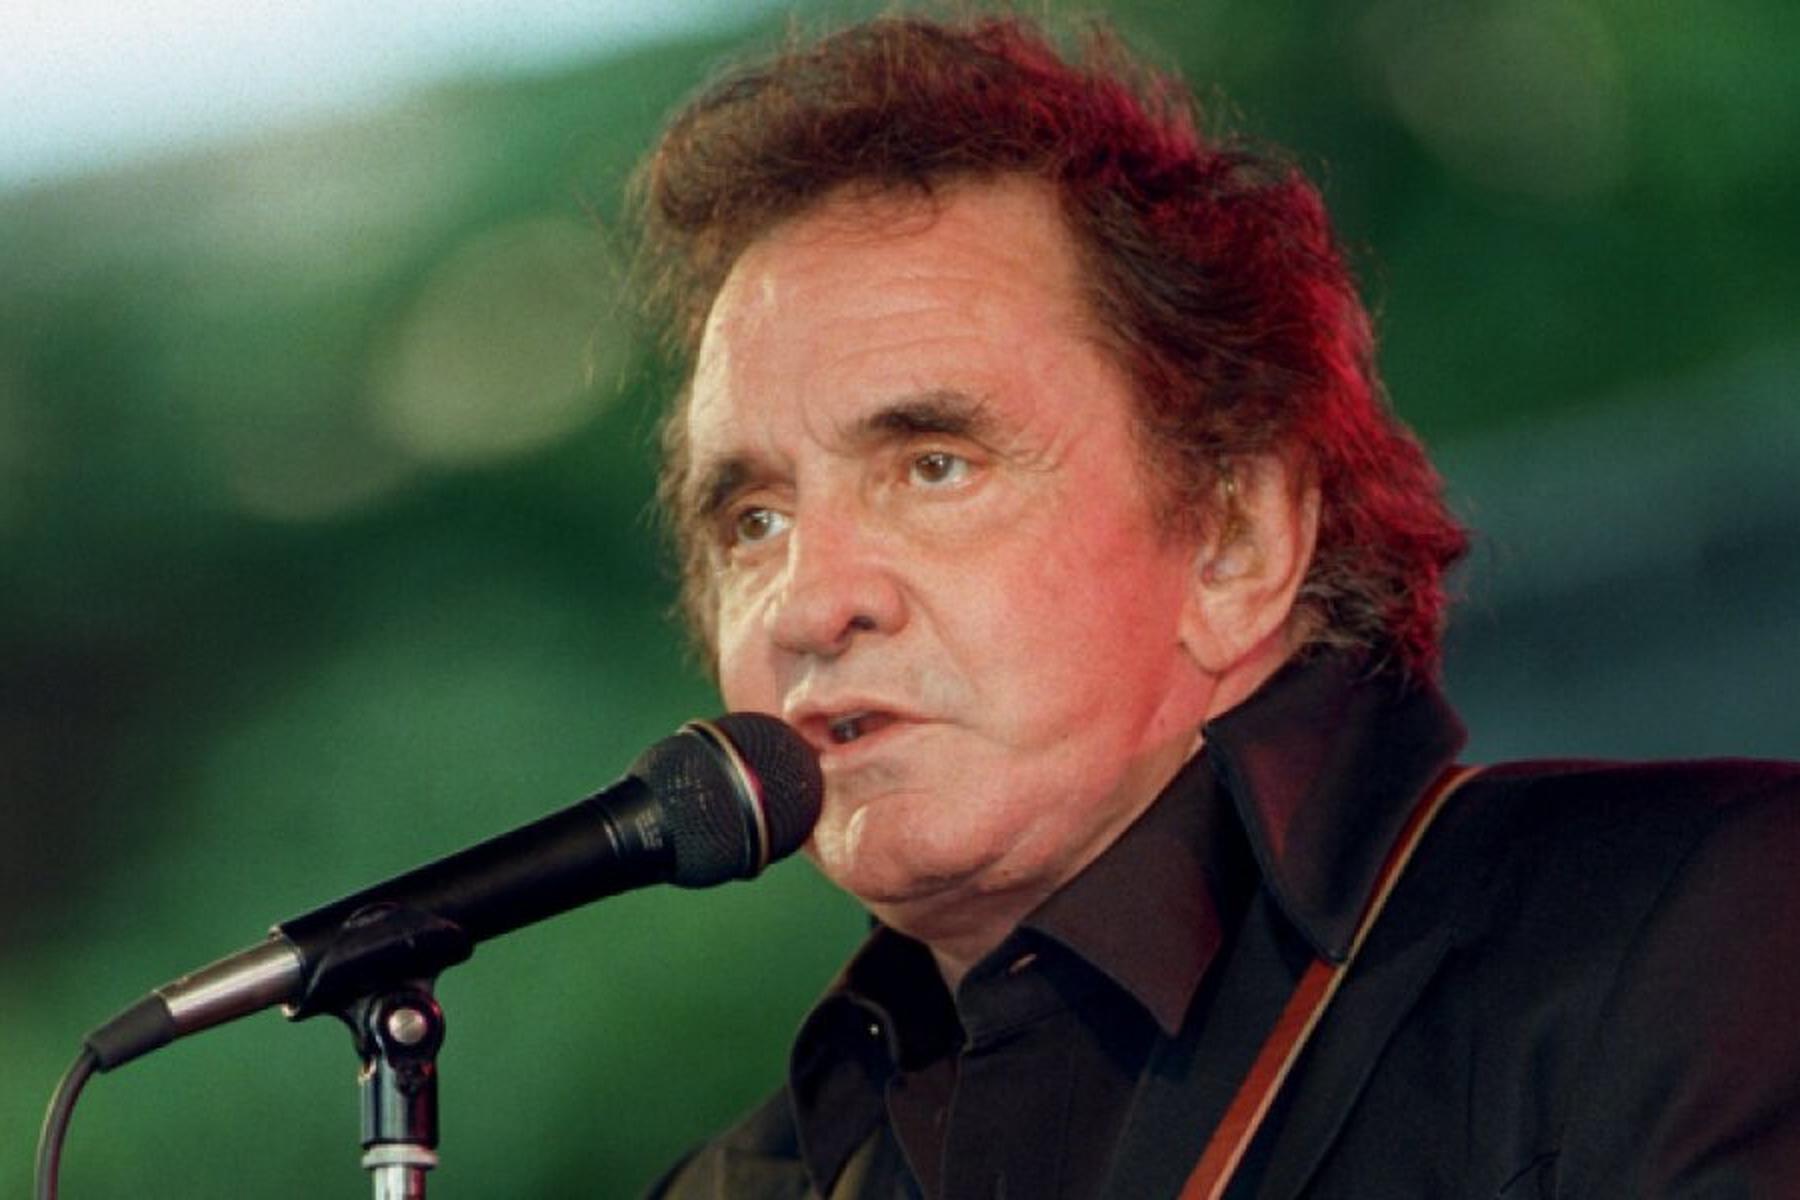 London: Neues posthumes Album von Johnny Cash